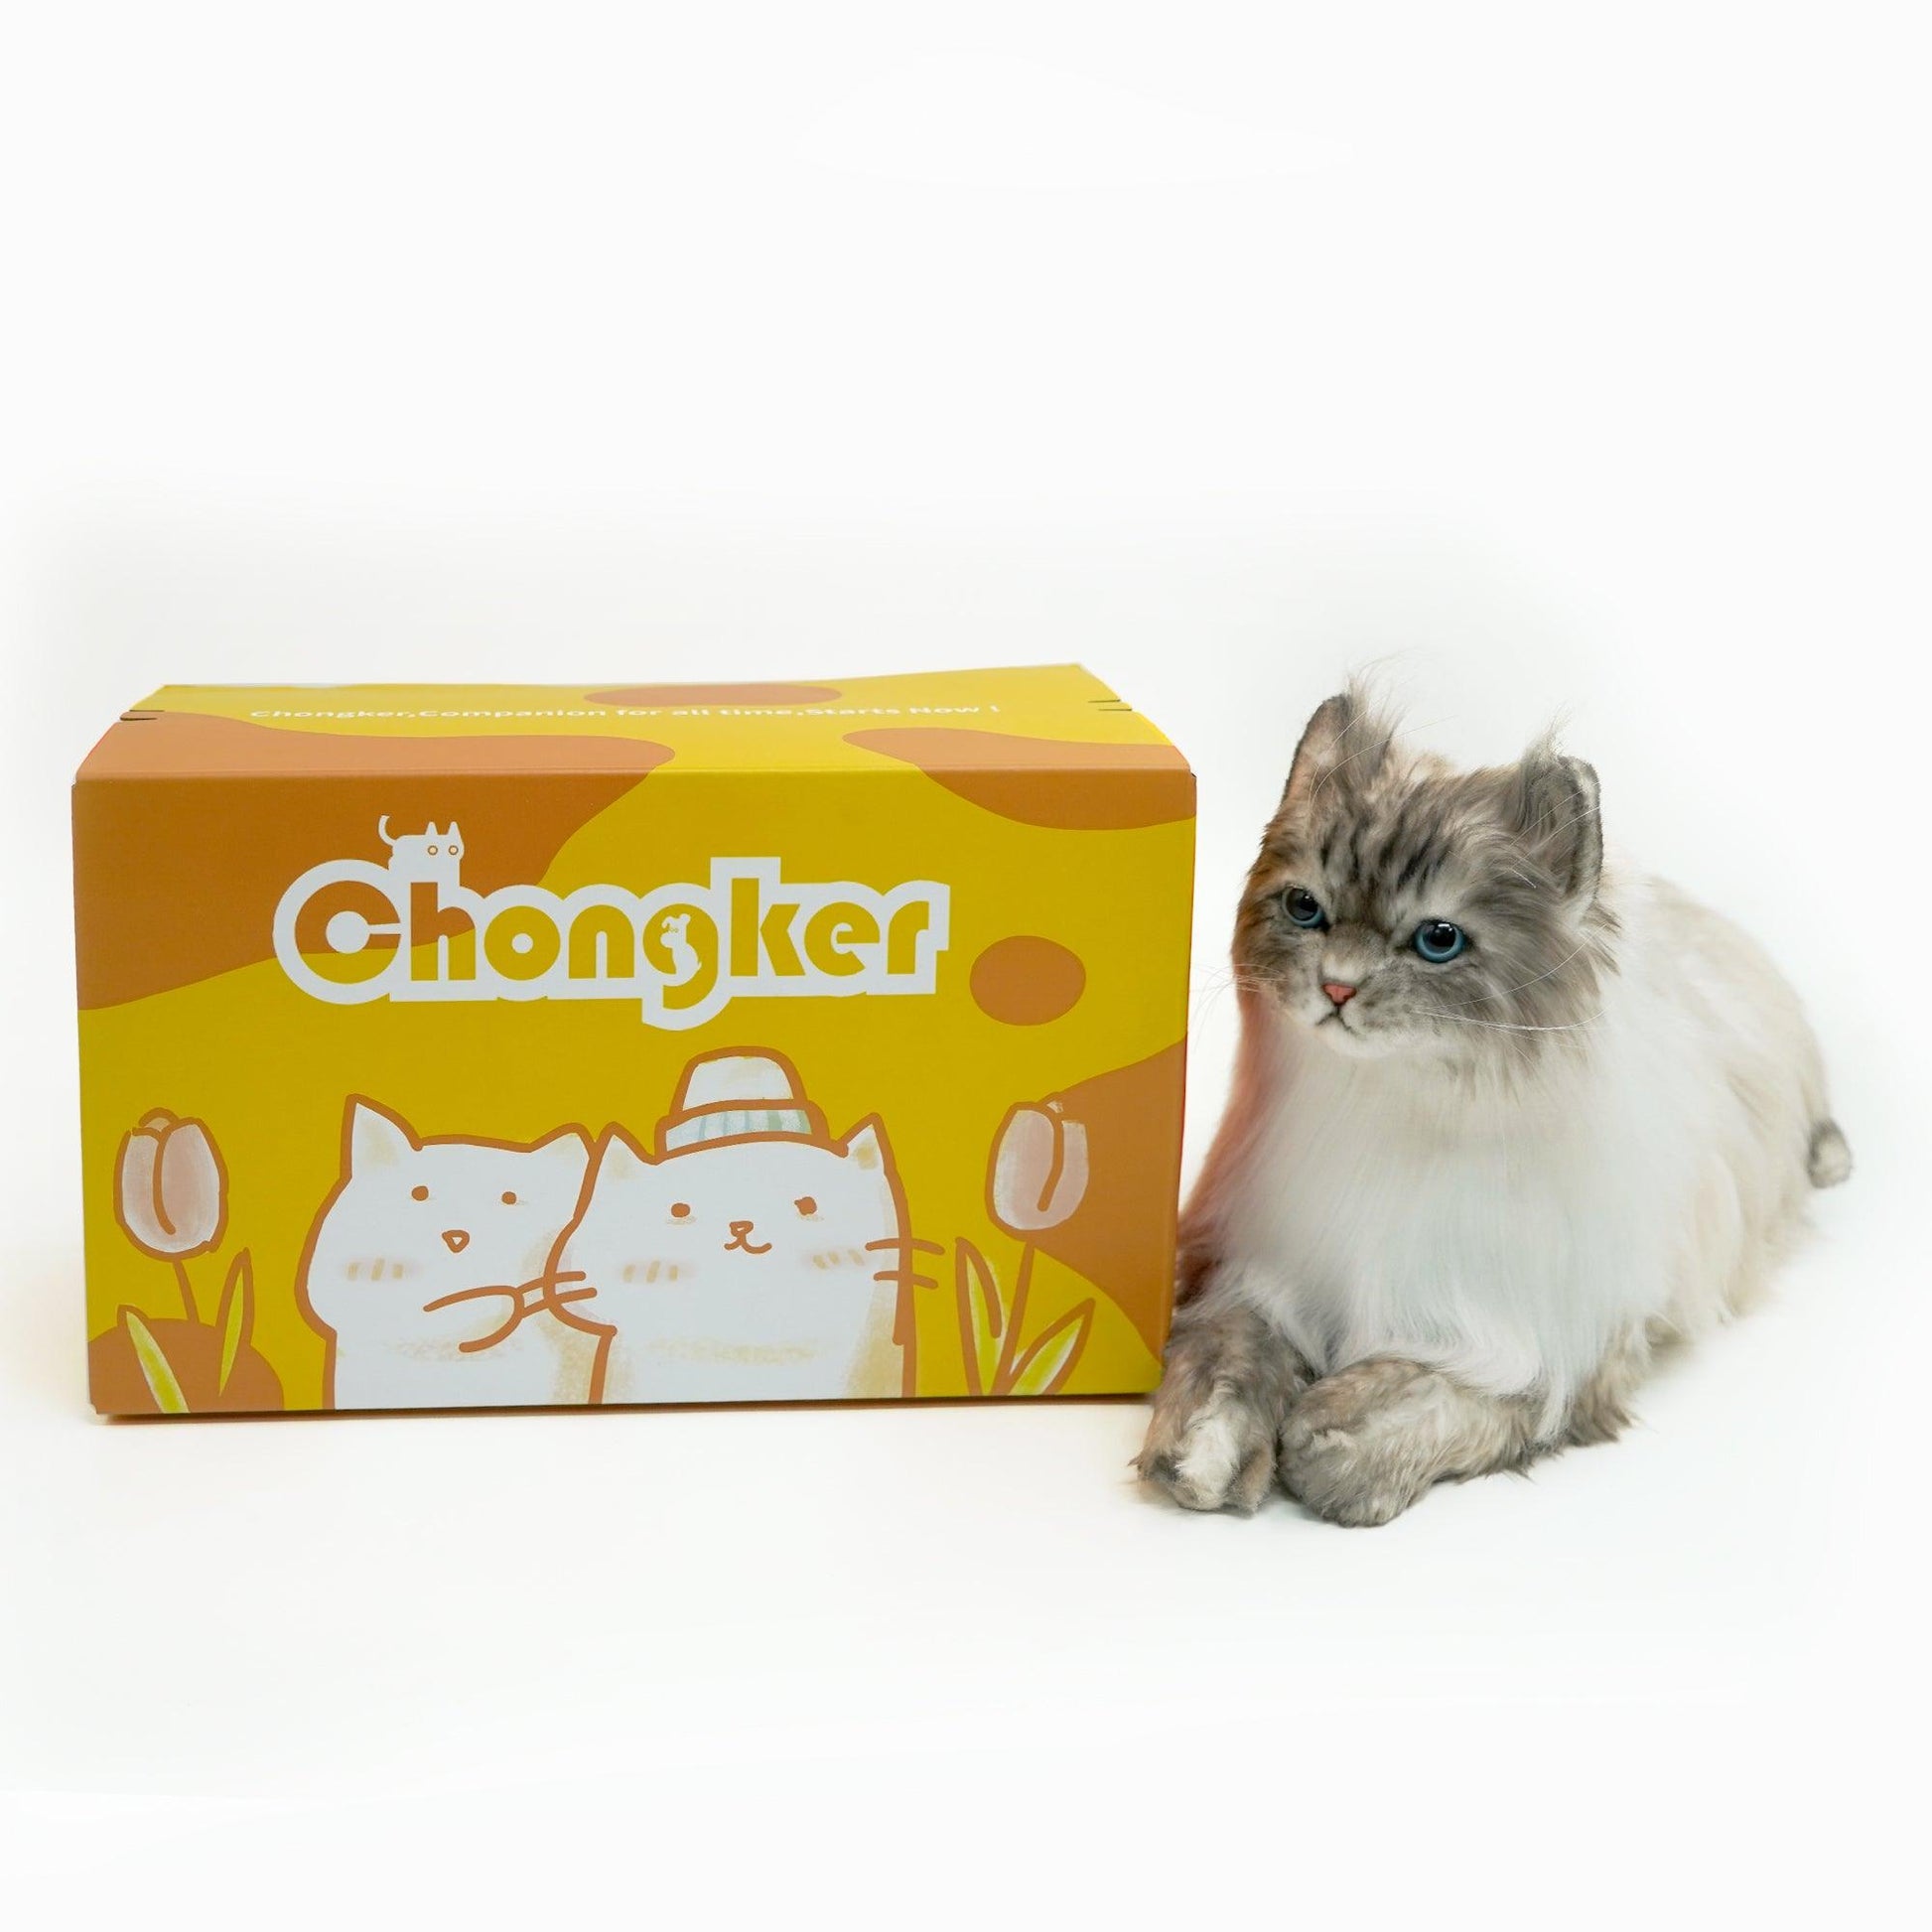 NO.8 Grey Hair Cat with Blue Eyes - Chongker